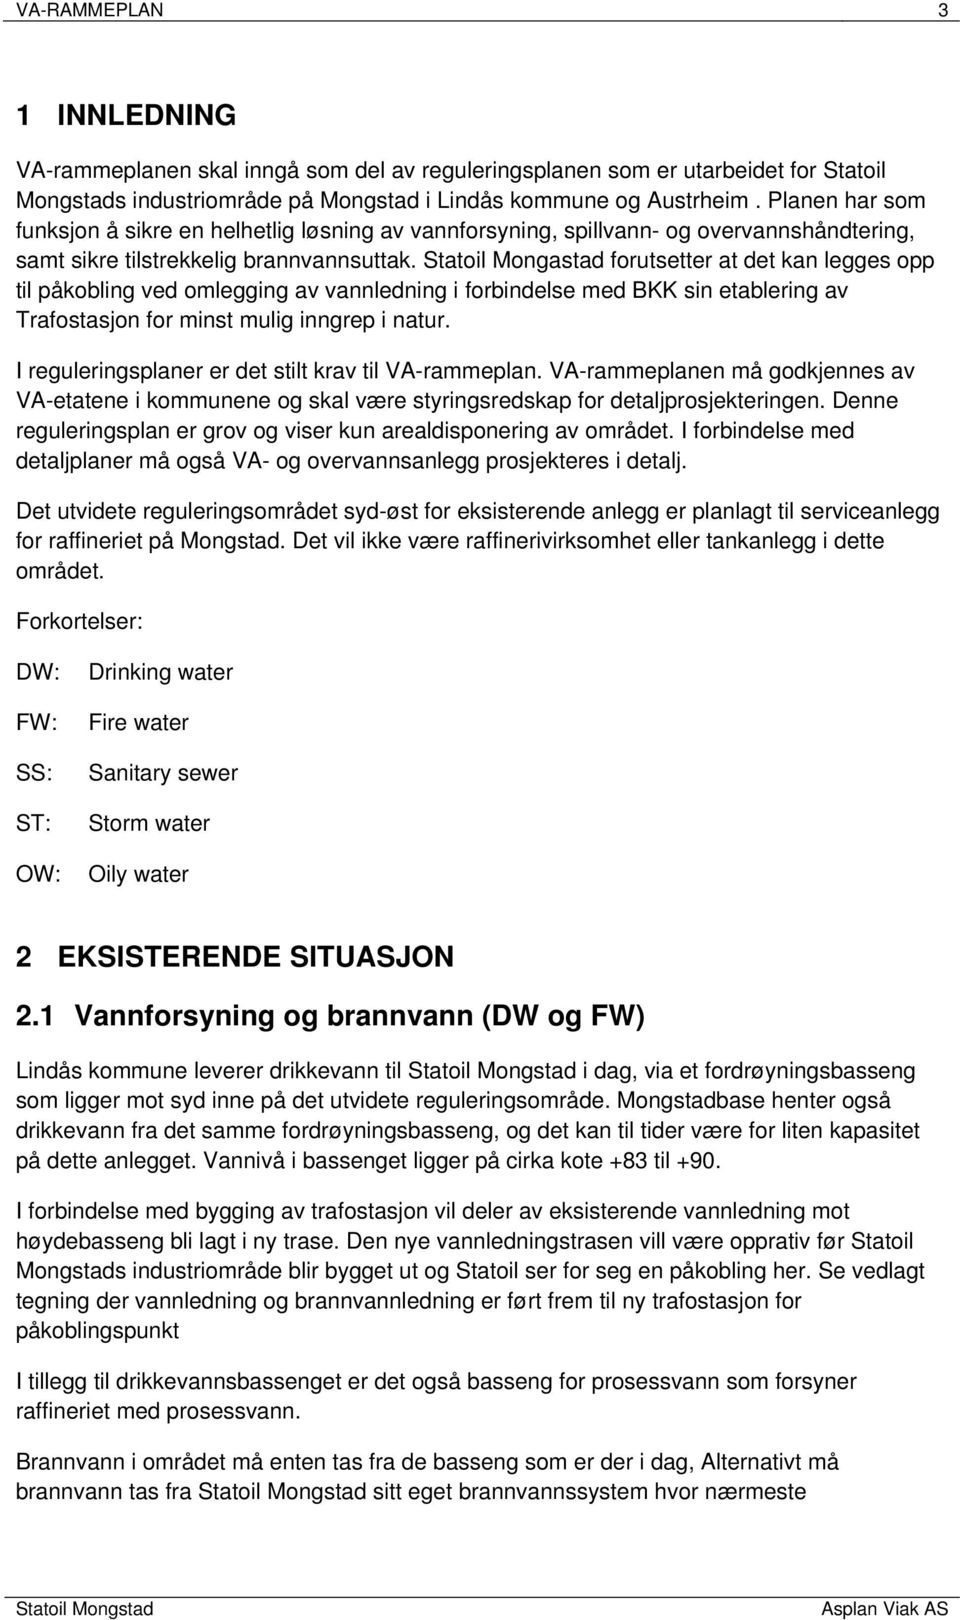 Statoil Mongastad forutsetter at det kan legges opp til påkobling ved omlegging av vannledning i forbindelse med BKK sin etablering av Trafostasjon for minst mulig inngrep i natur.